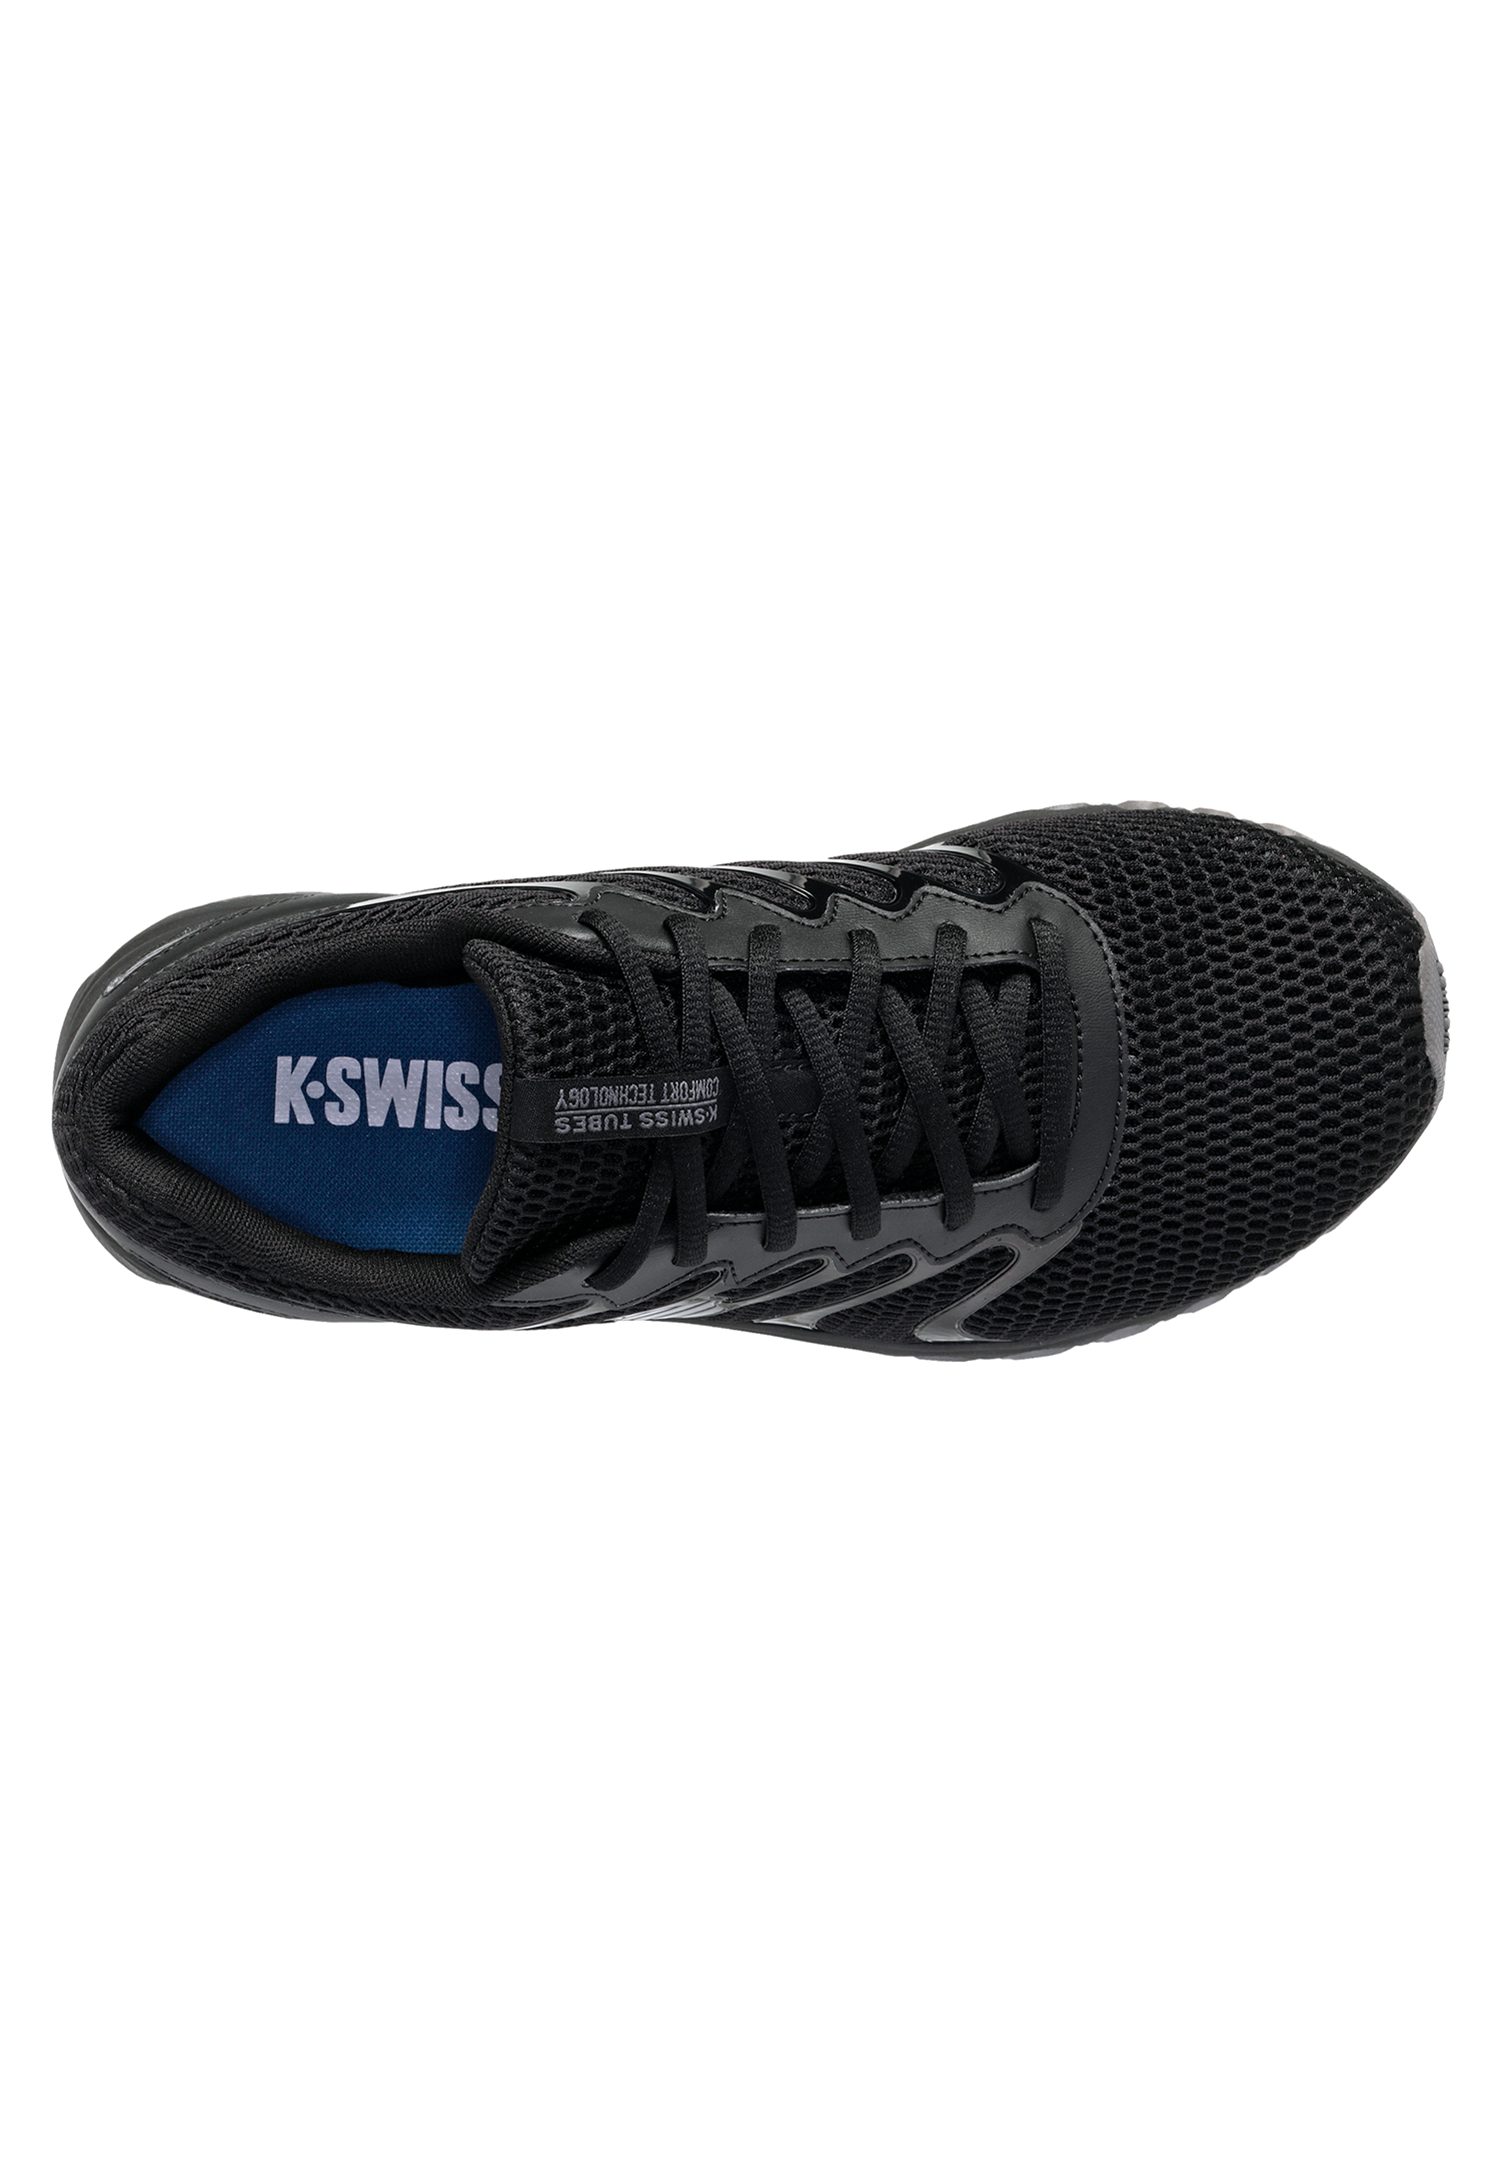 K-SWISS TUBES Comfort 200 Kinder Sneaker Sportschuh 87112 Schwarz